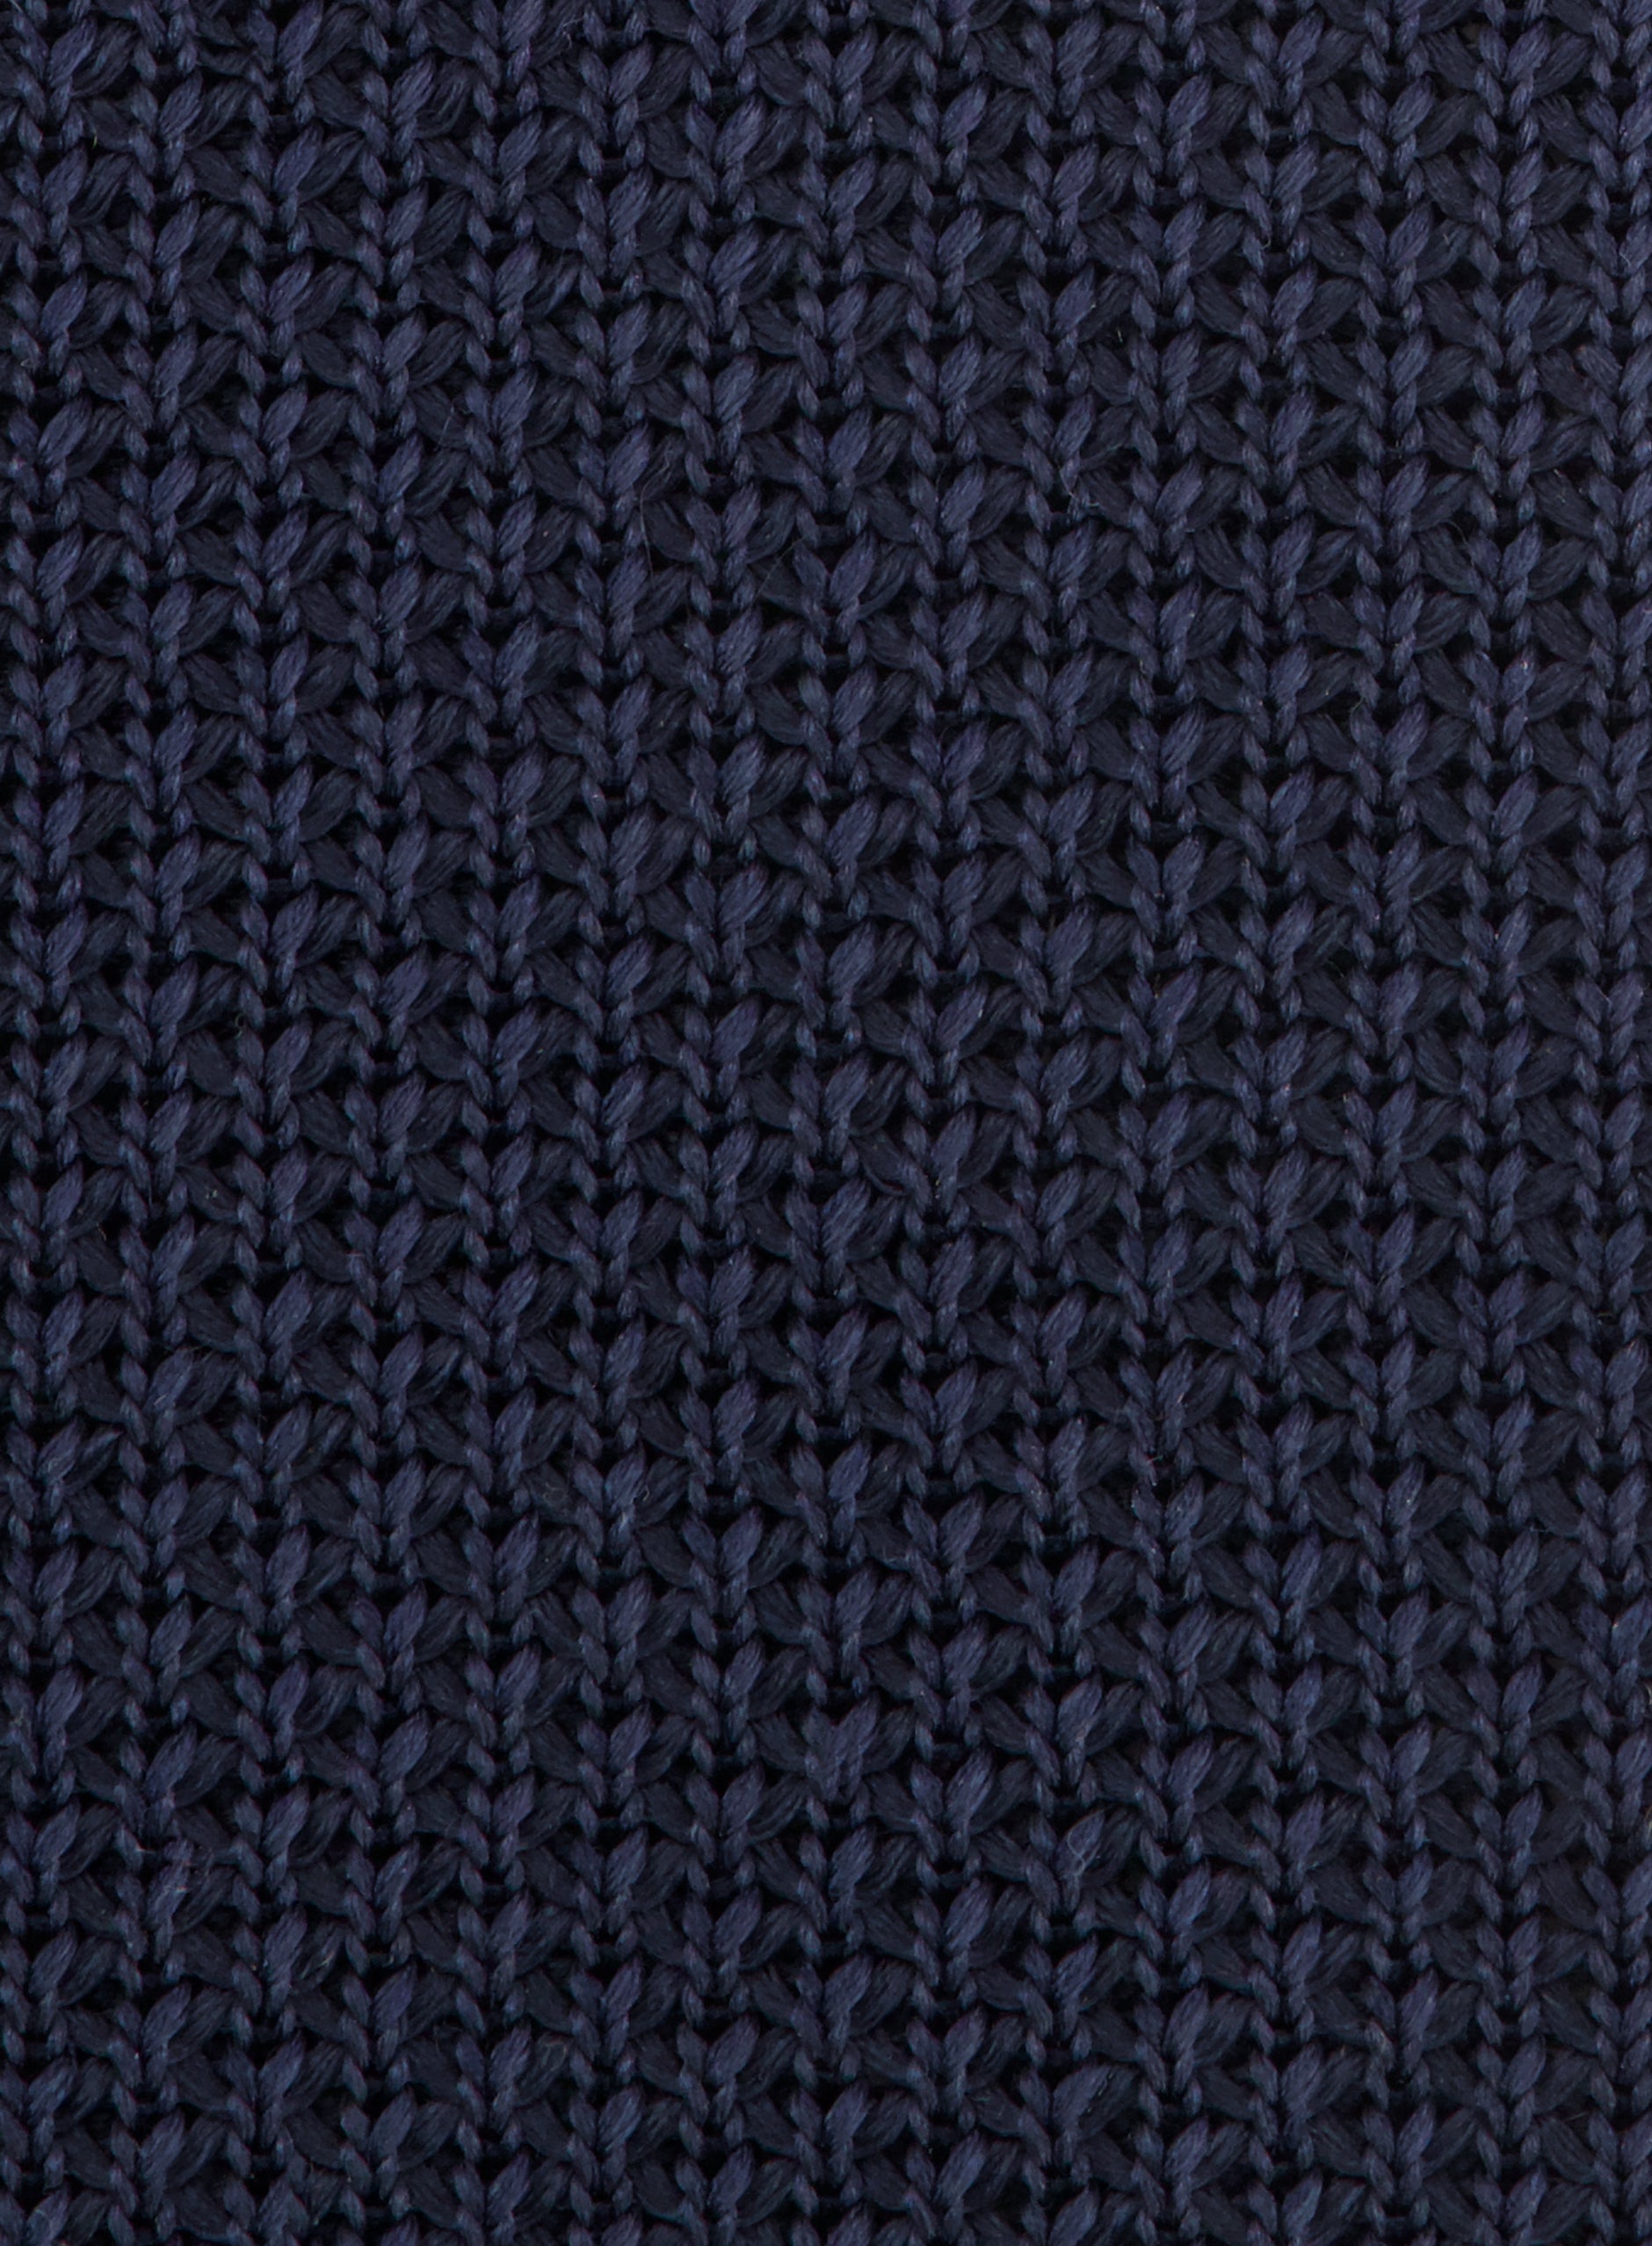 Knitted stropdas | BLUE NAVY